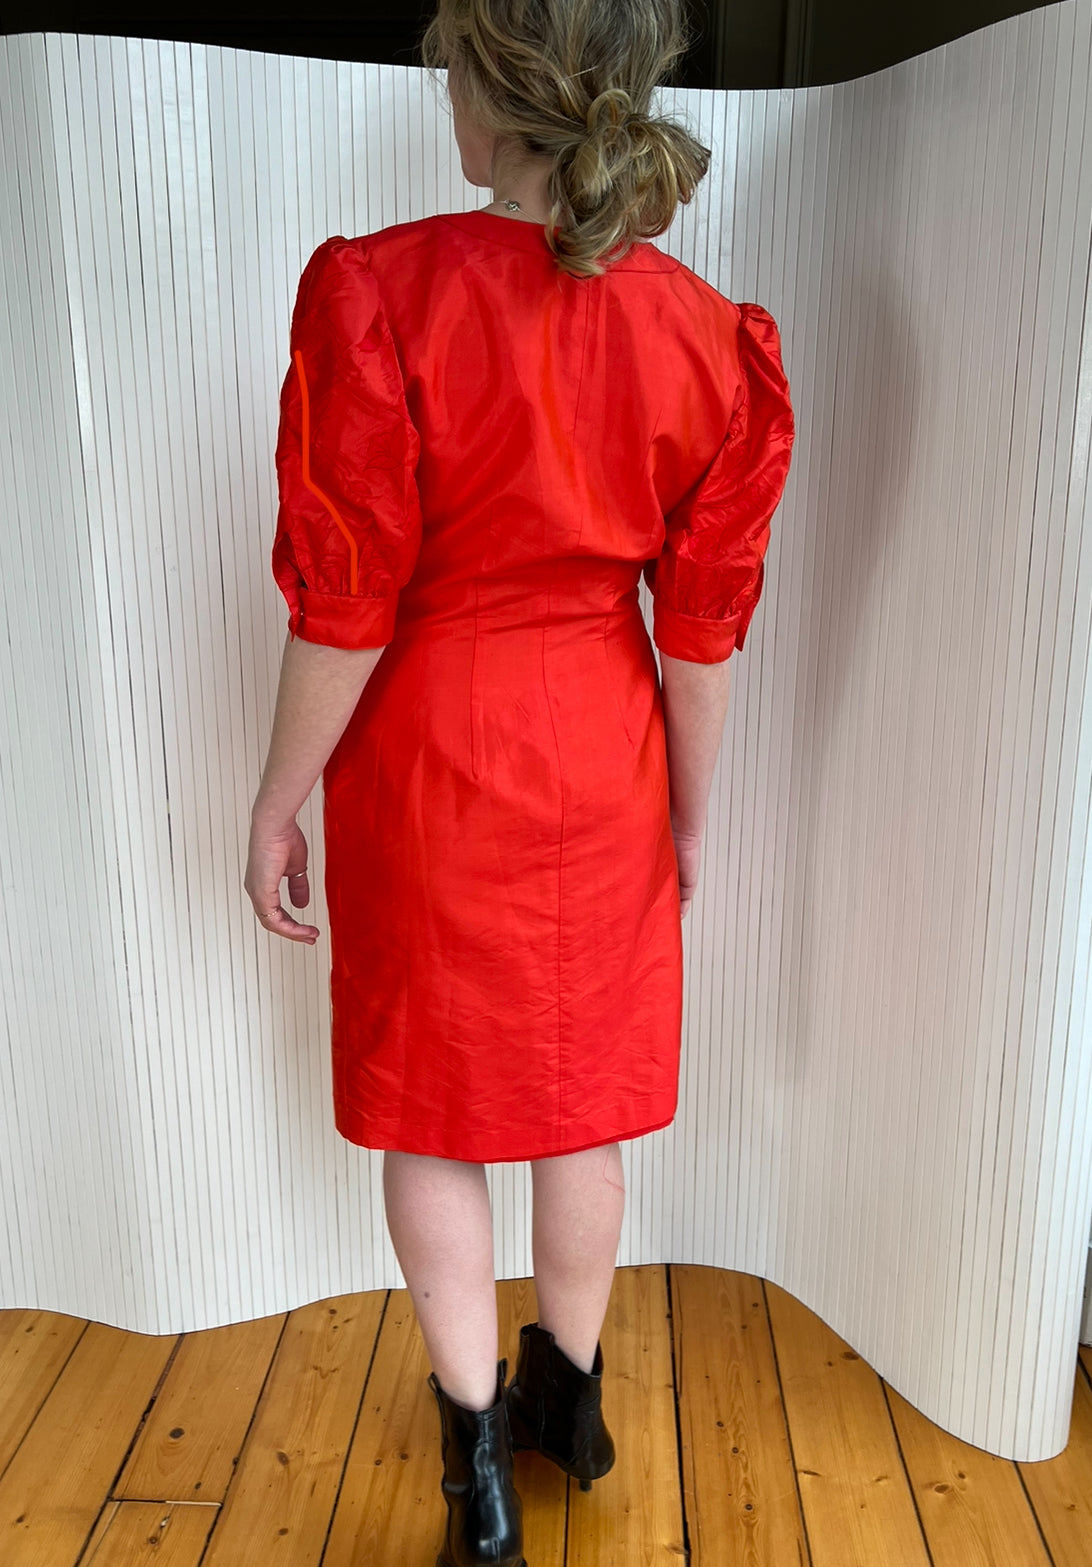 Heartbreaker red silk dress